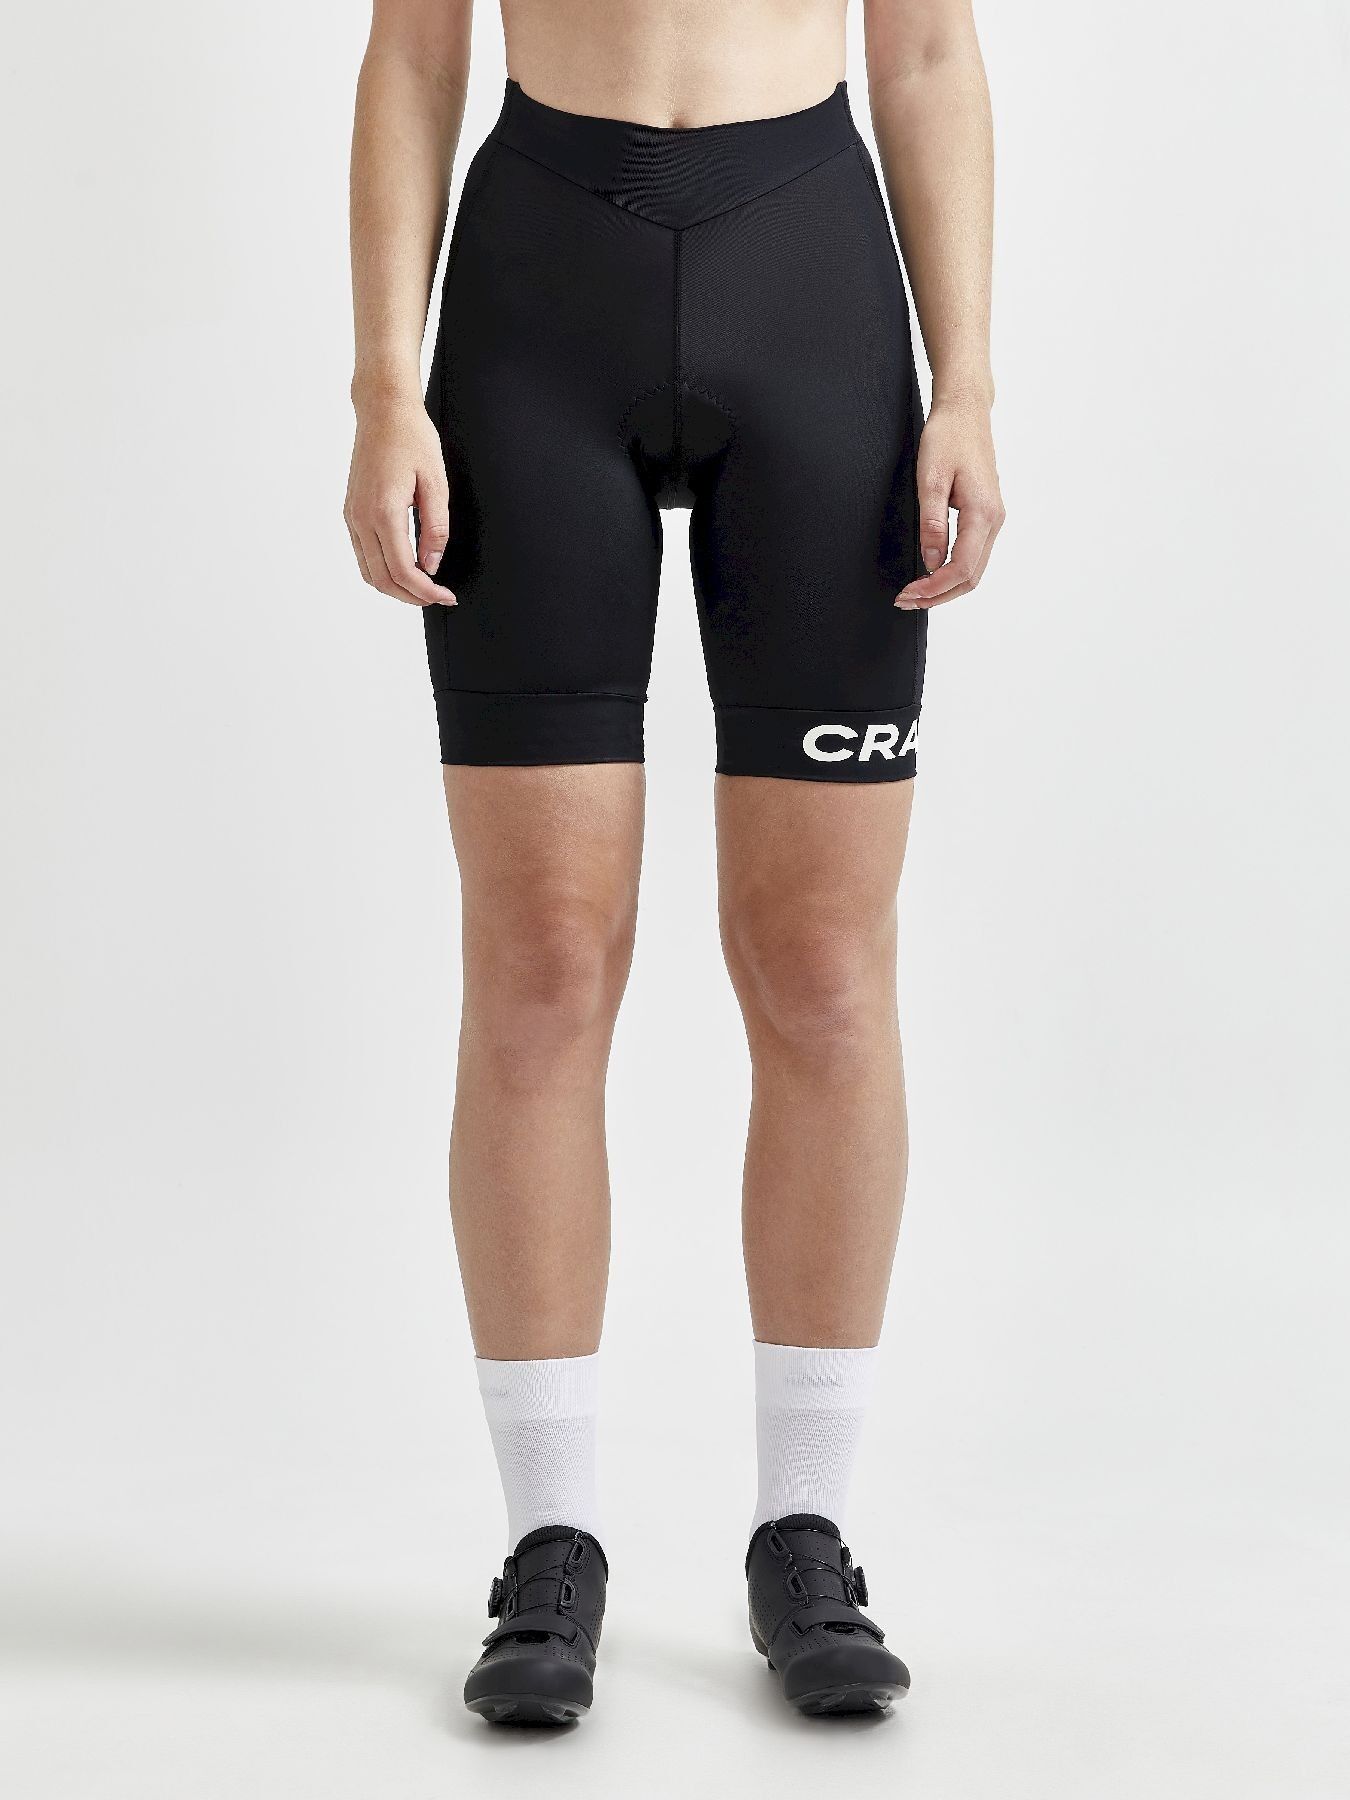 Craft Core Endurance Shorts - Cycling shorts - Women's